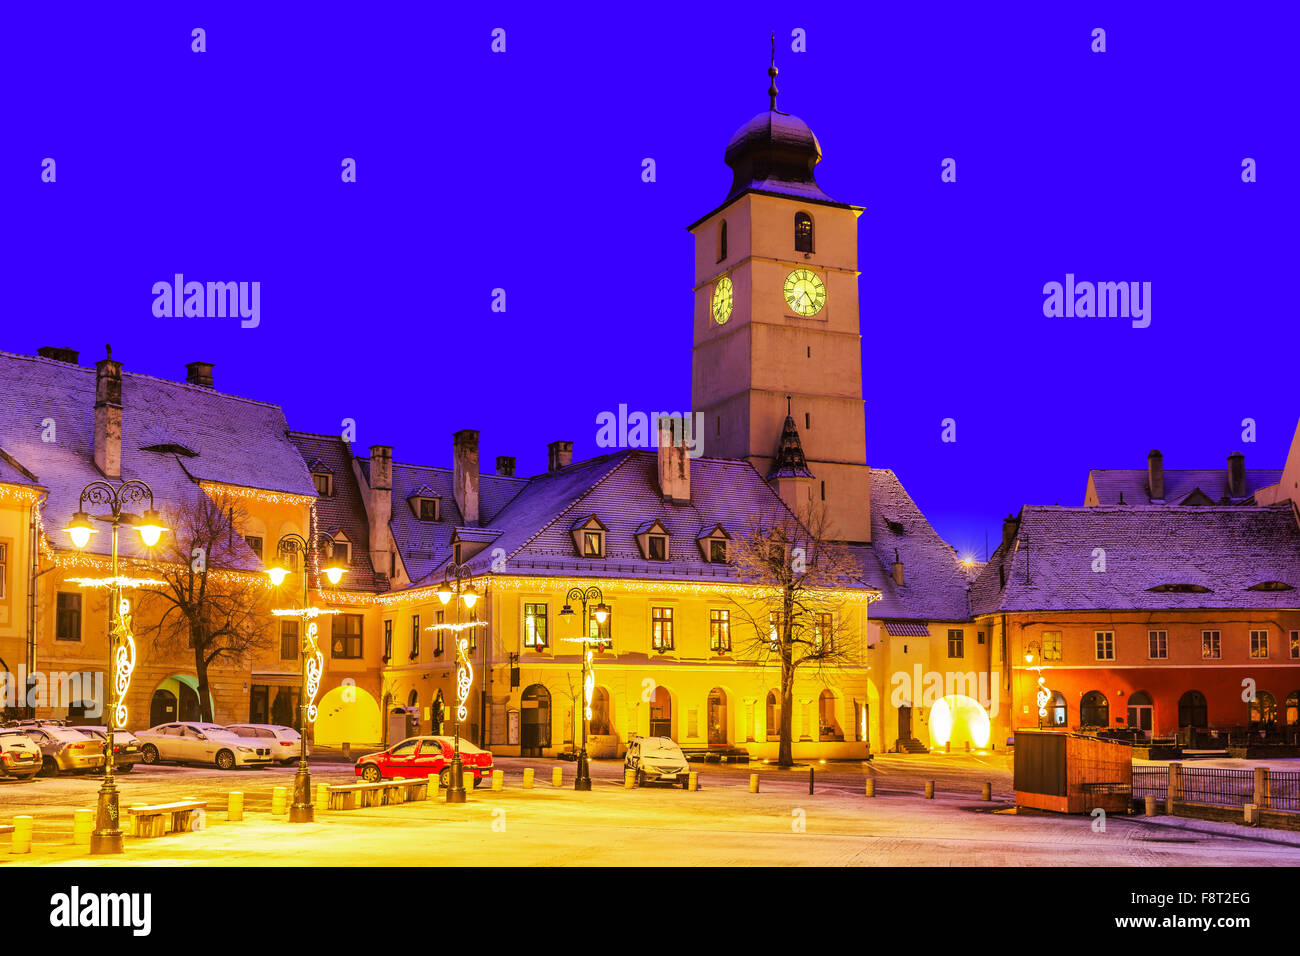 Sibiu, Transylvania. Romania. Small Square, medieval town of Sibiu. Stock Photo